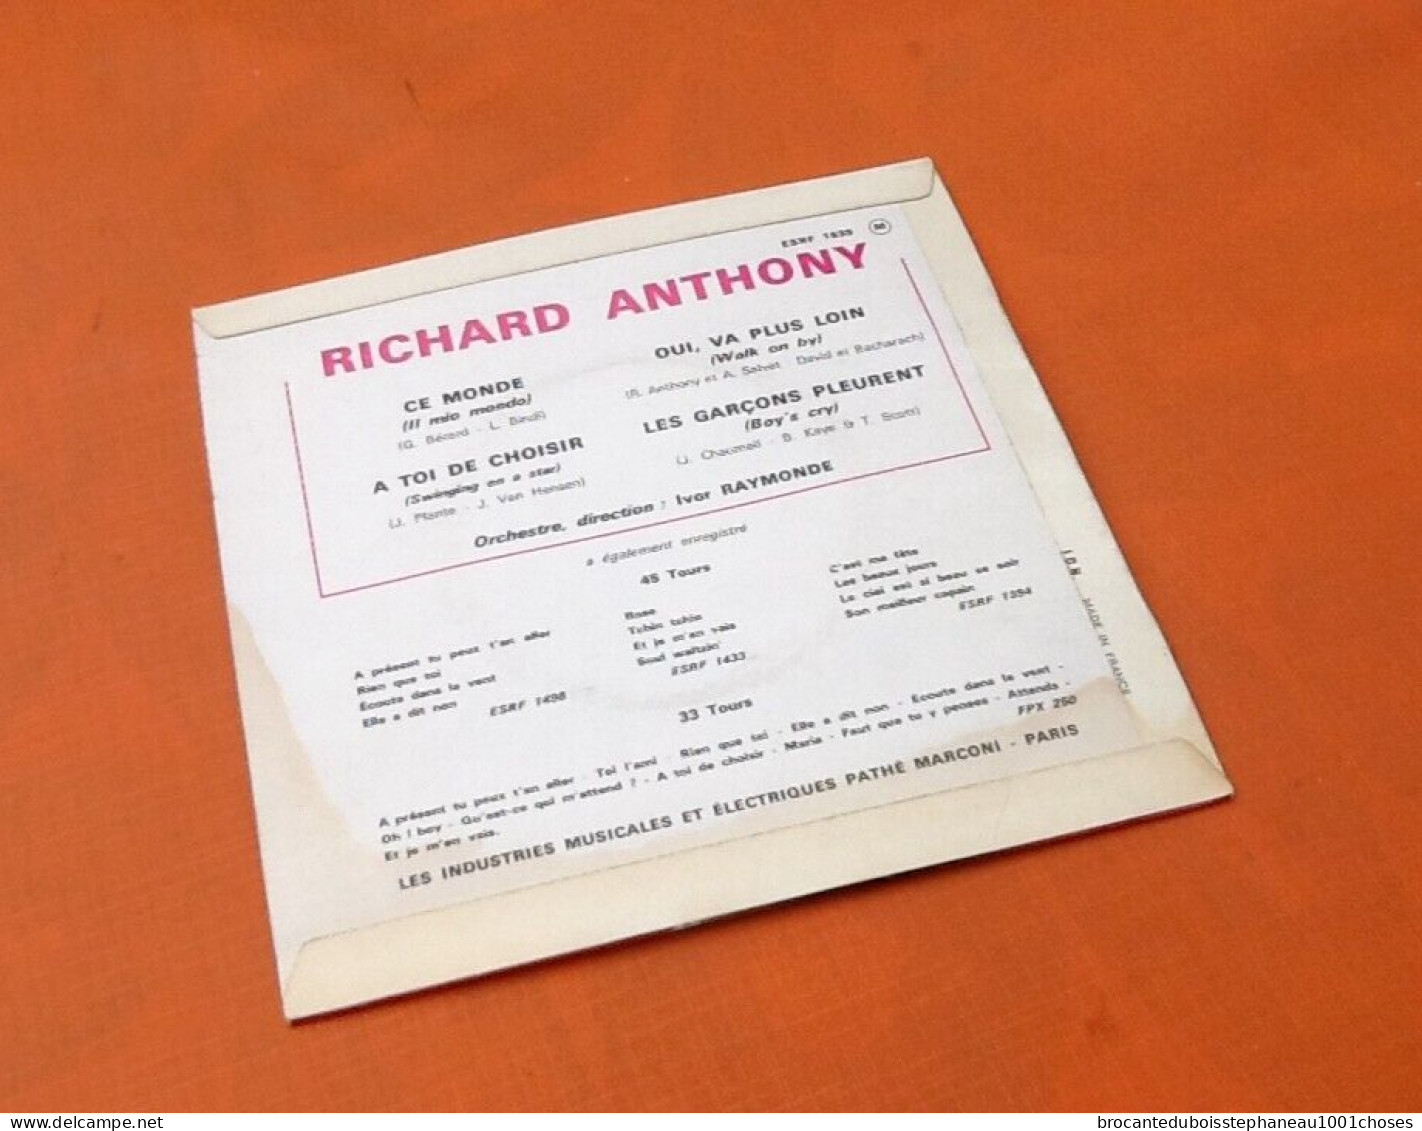 Vinyle 45 Tours Richard Anthony Ce Monde (1964) - Autres - Musique Française